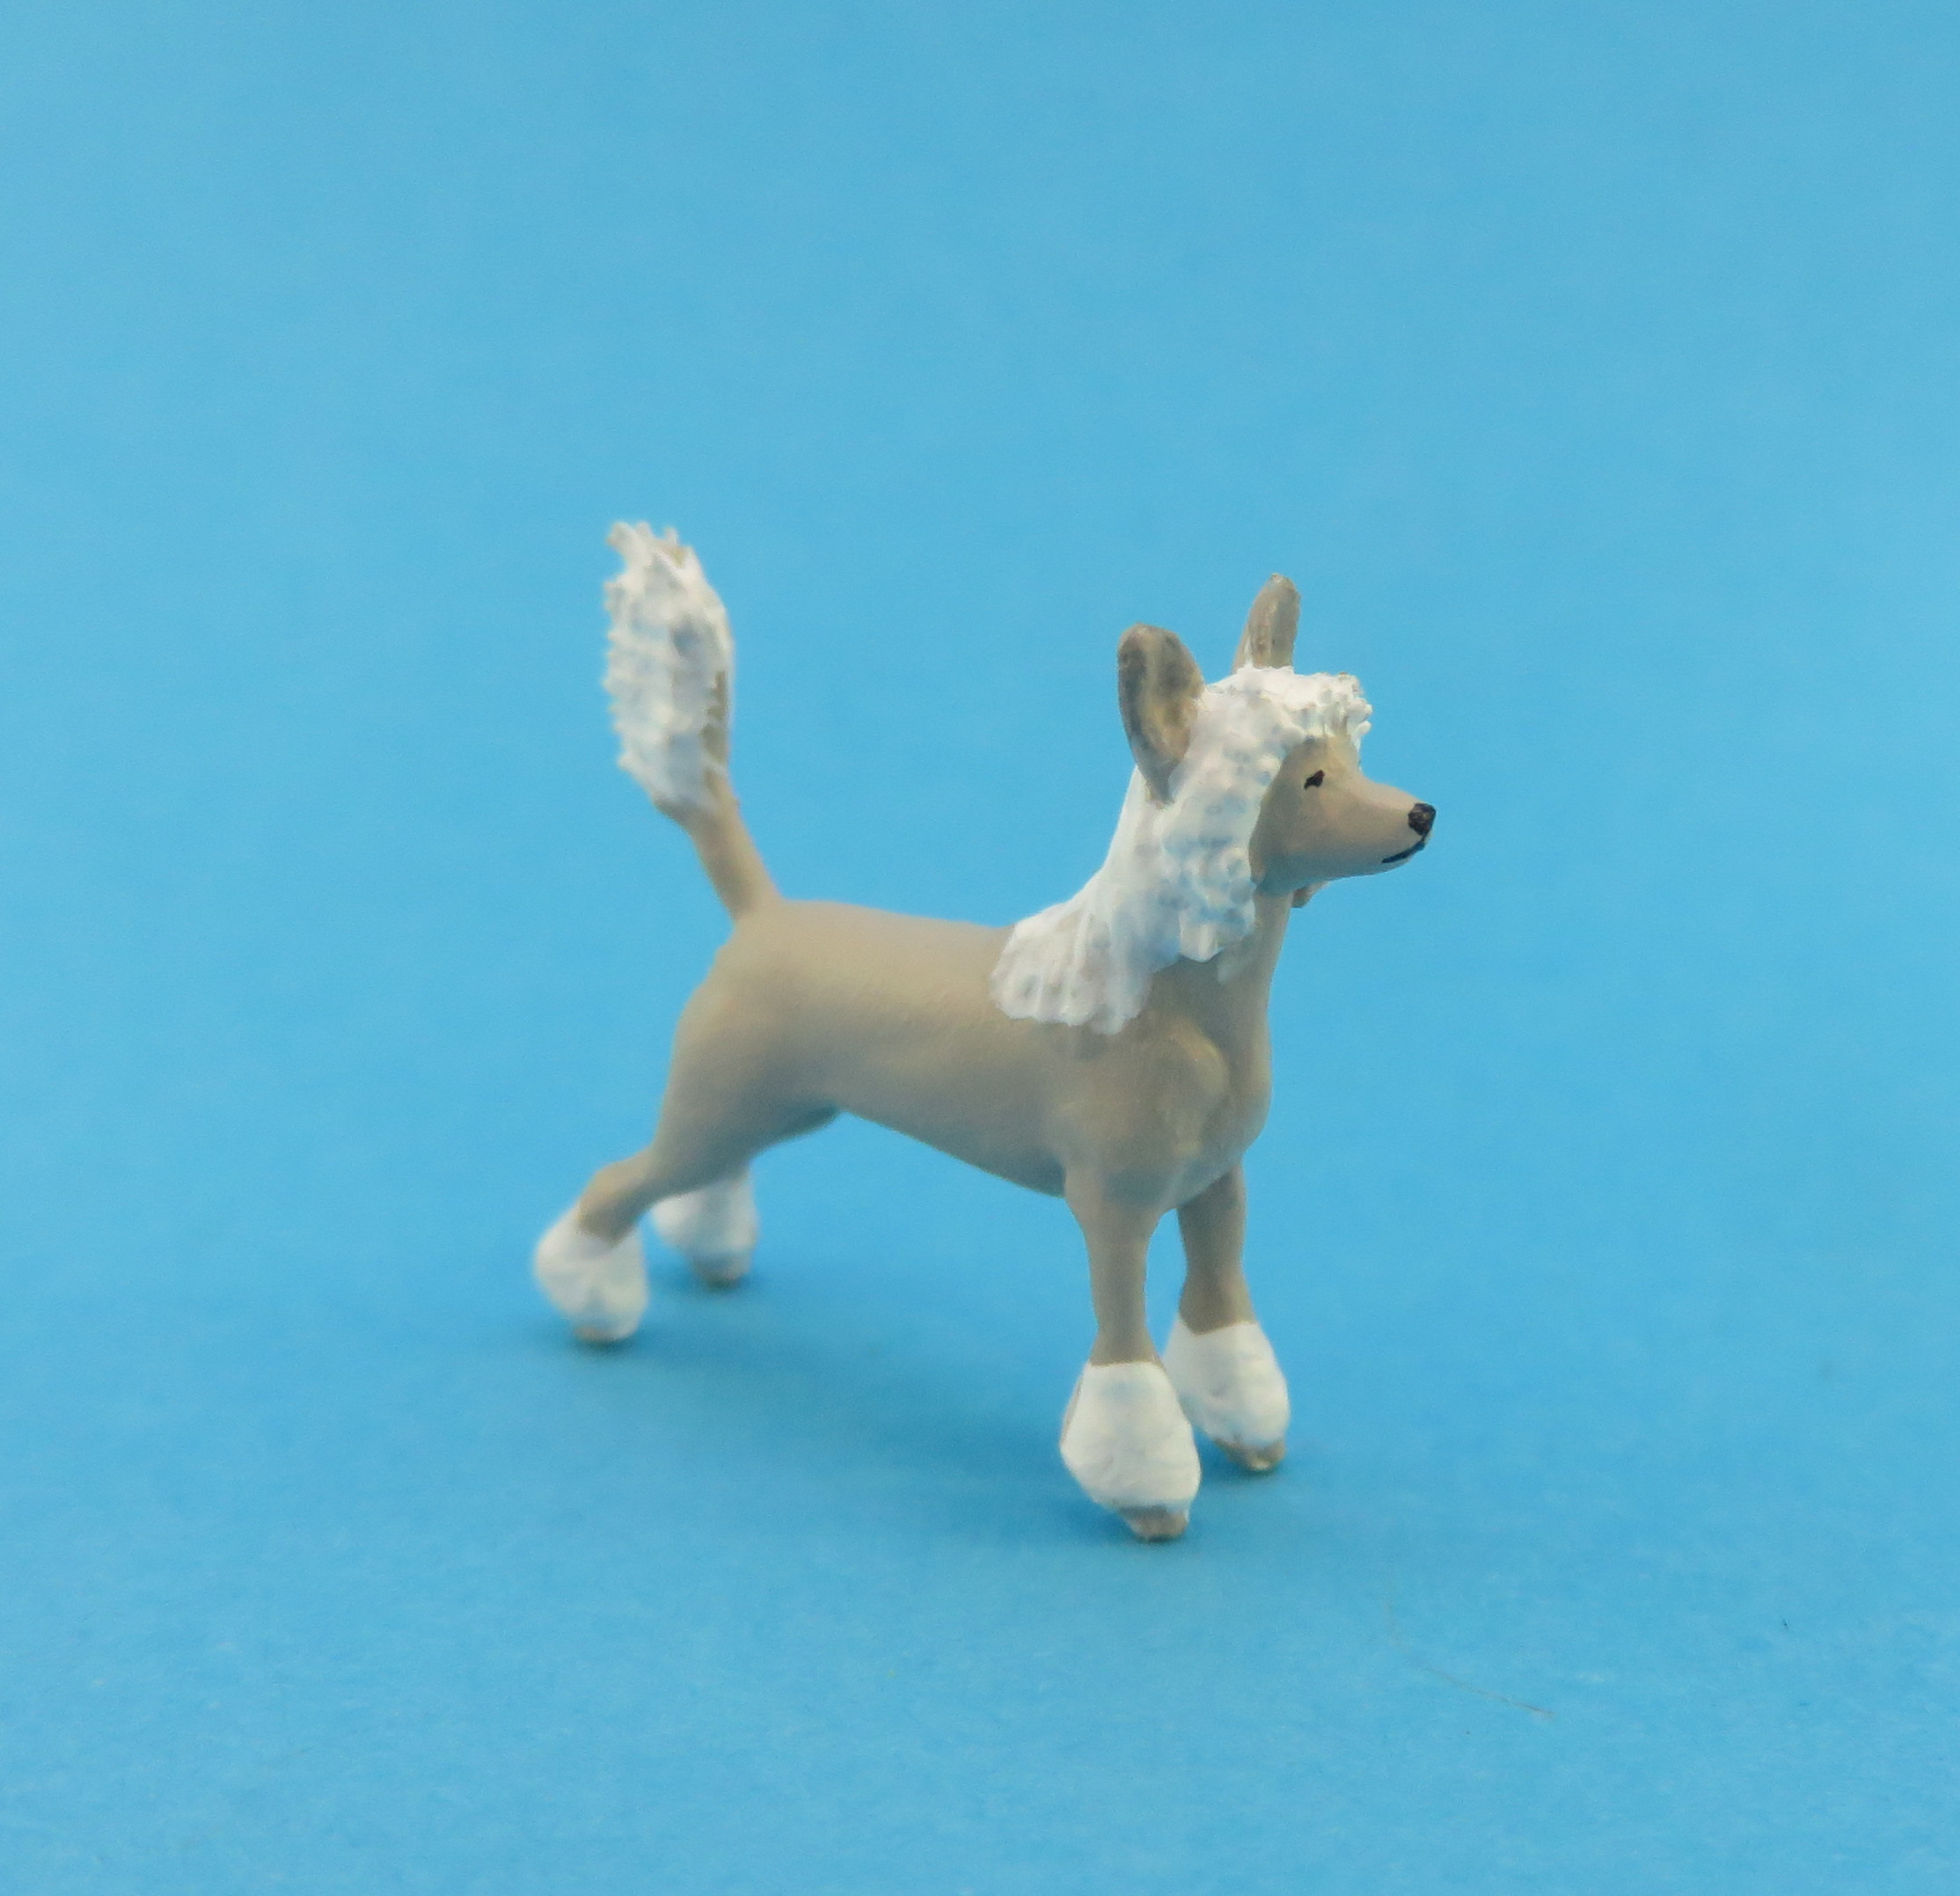 Schopfhund Chinese Crested Dog, Hund für die Gartenbahn, Hund in 1:22.5, Klingenhöfer